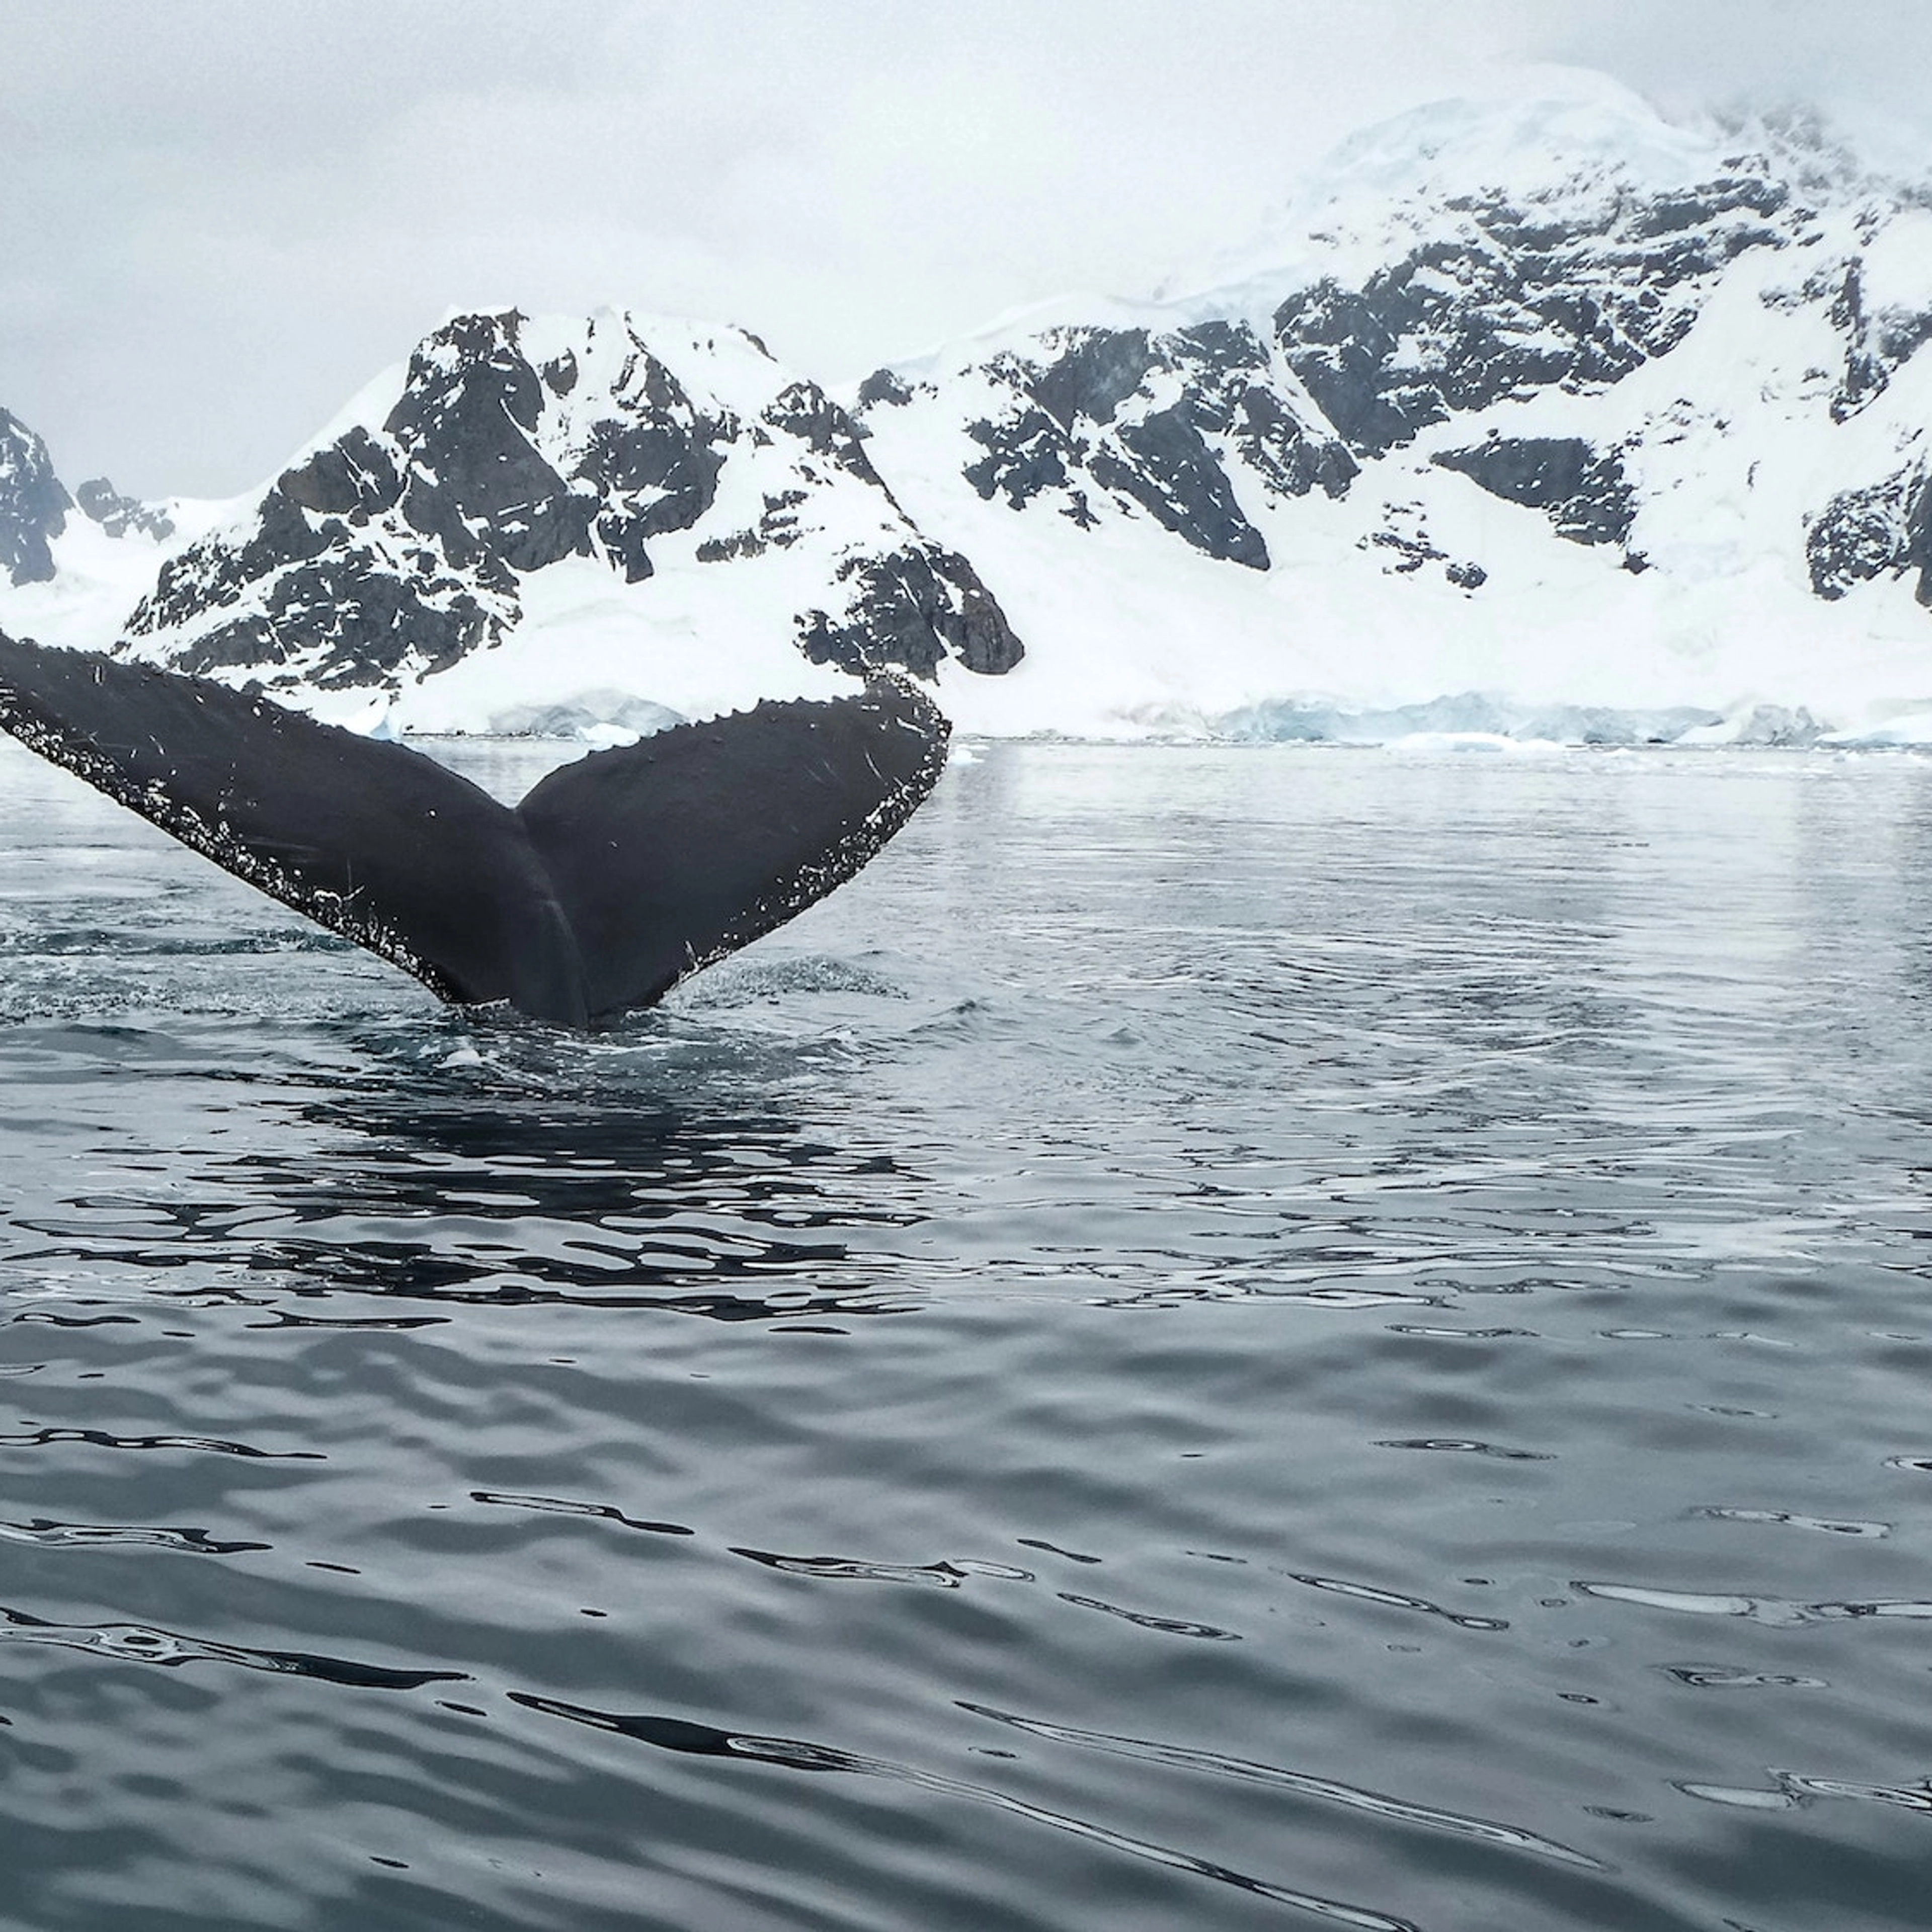 Whale in winter landscape on Whale safari in Tromsø- Things to do in Tromsø, Norwegen